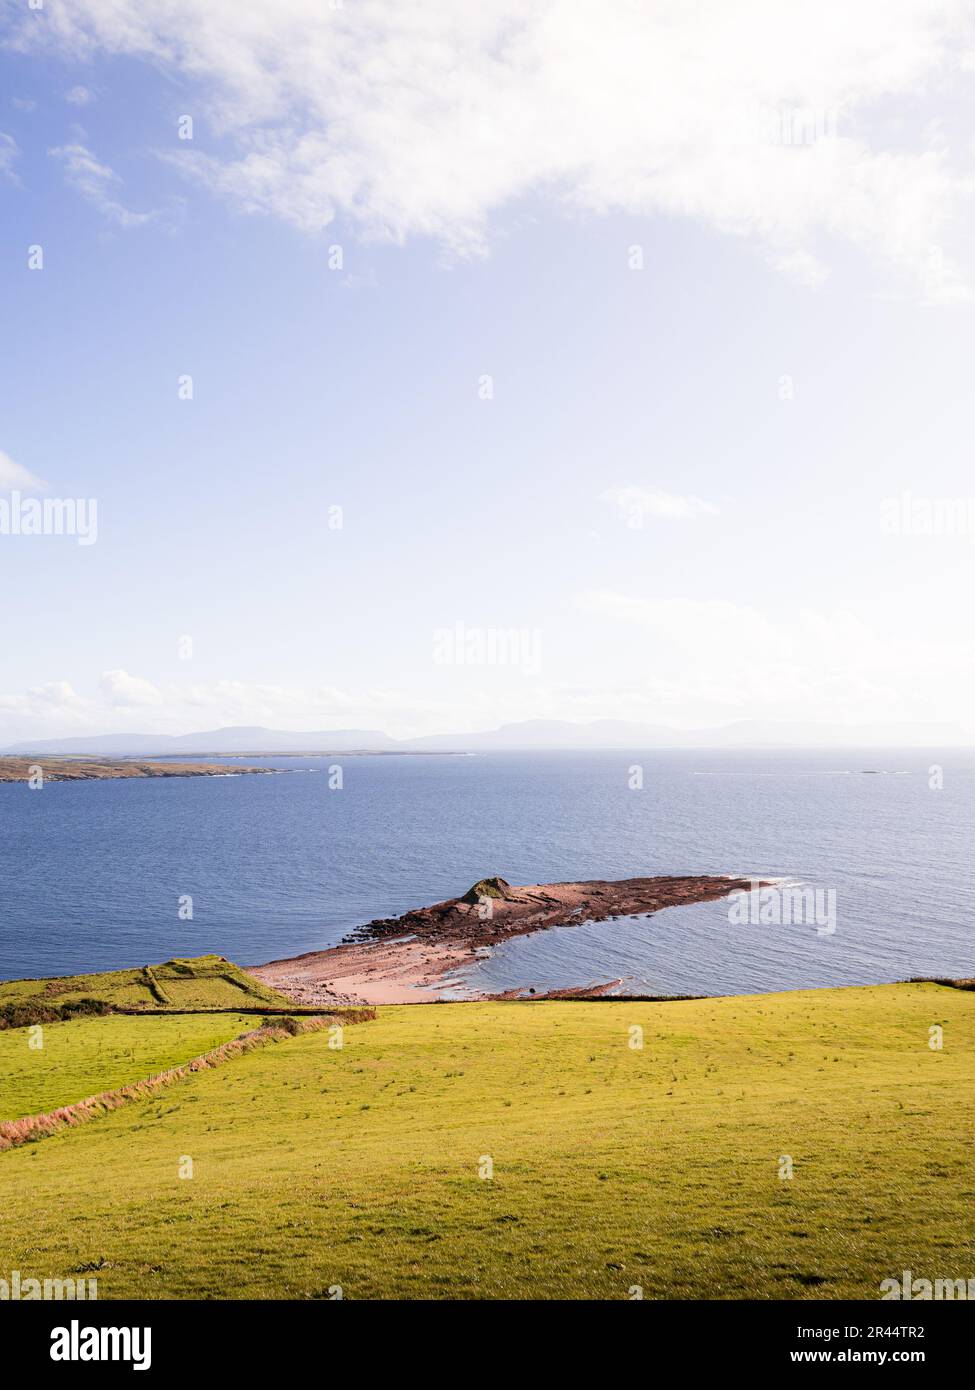 Eine Küstenlandschaft des Atlantischen Ozeans vom Largy Viewpoint in Irland. Das ist in der Donegal Gegend. Blick auf eine kleine Halbinsel im Meer. Stockfoto